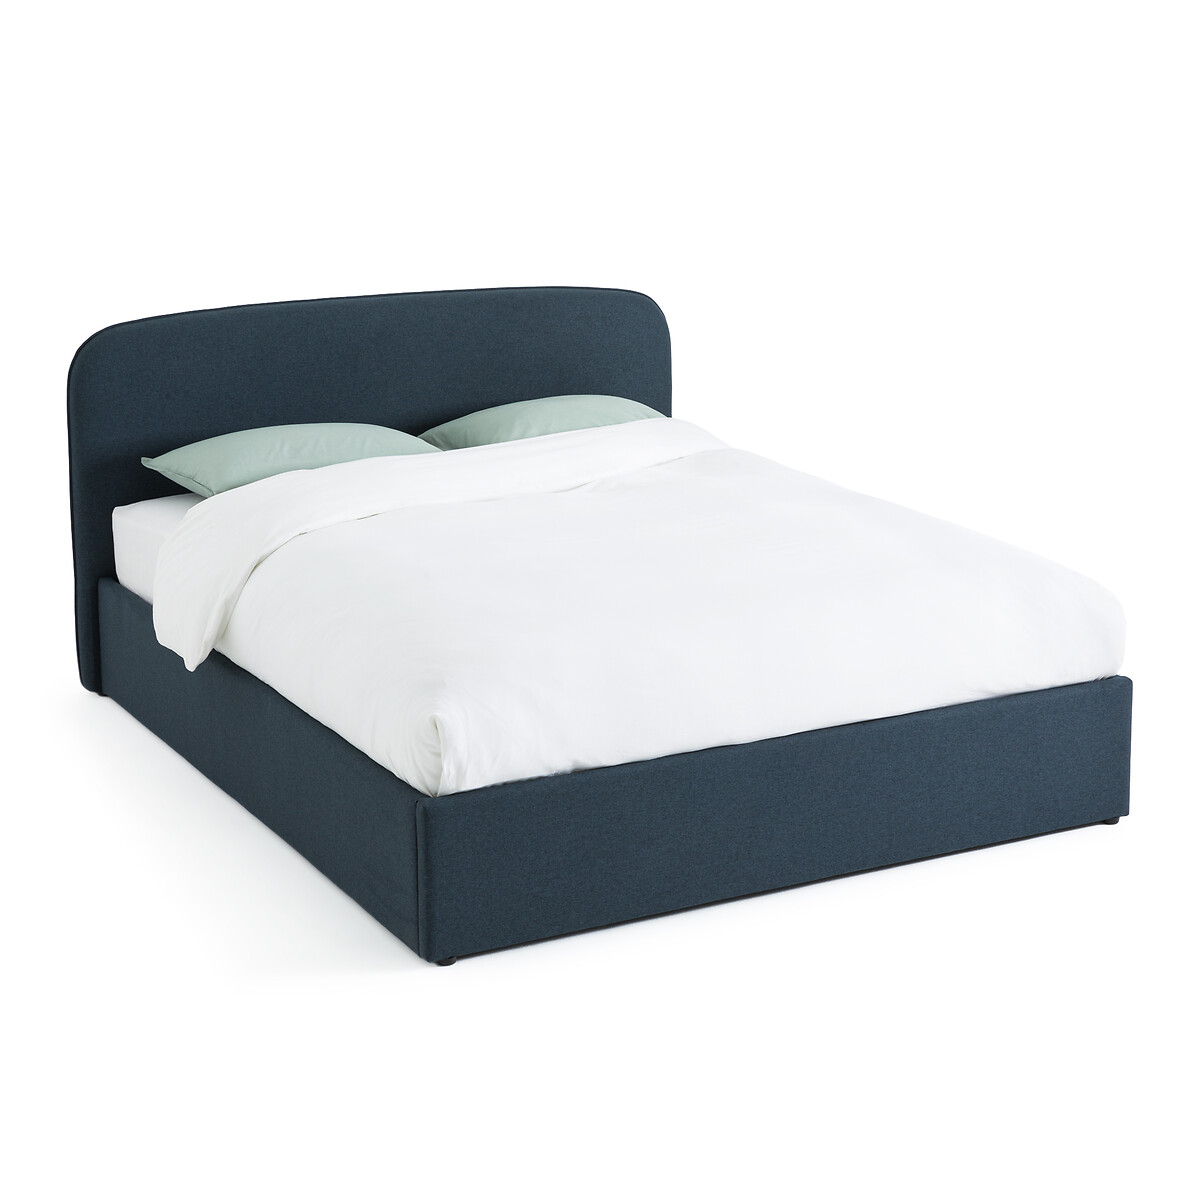 Кровать С подъемным механизмом Conto 140 x 190 см синий LaRedoute, размер 140 x 190 см - фото 2